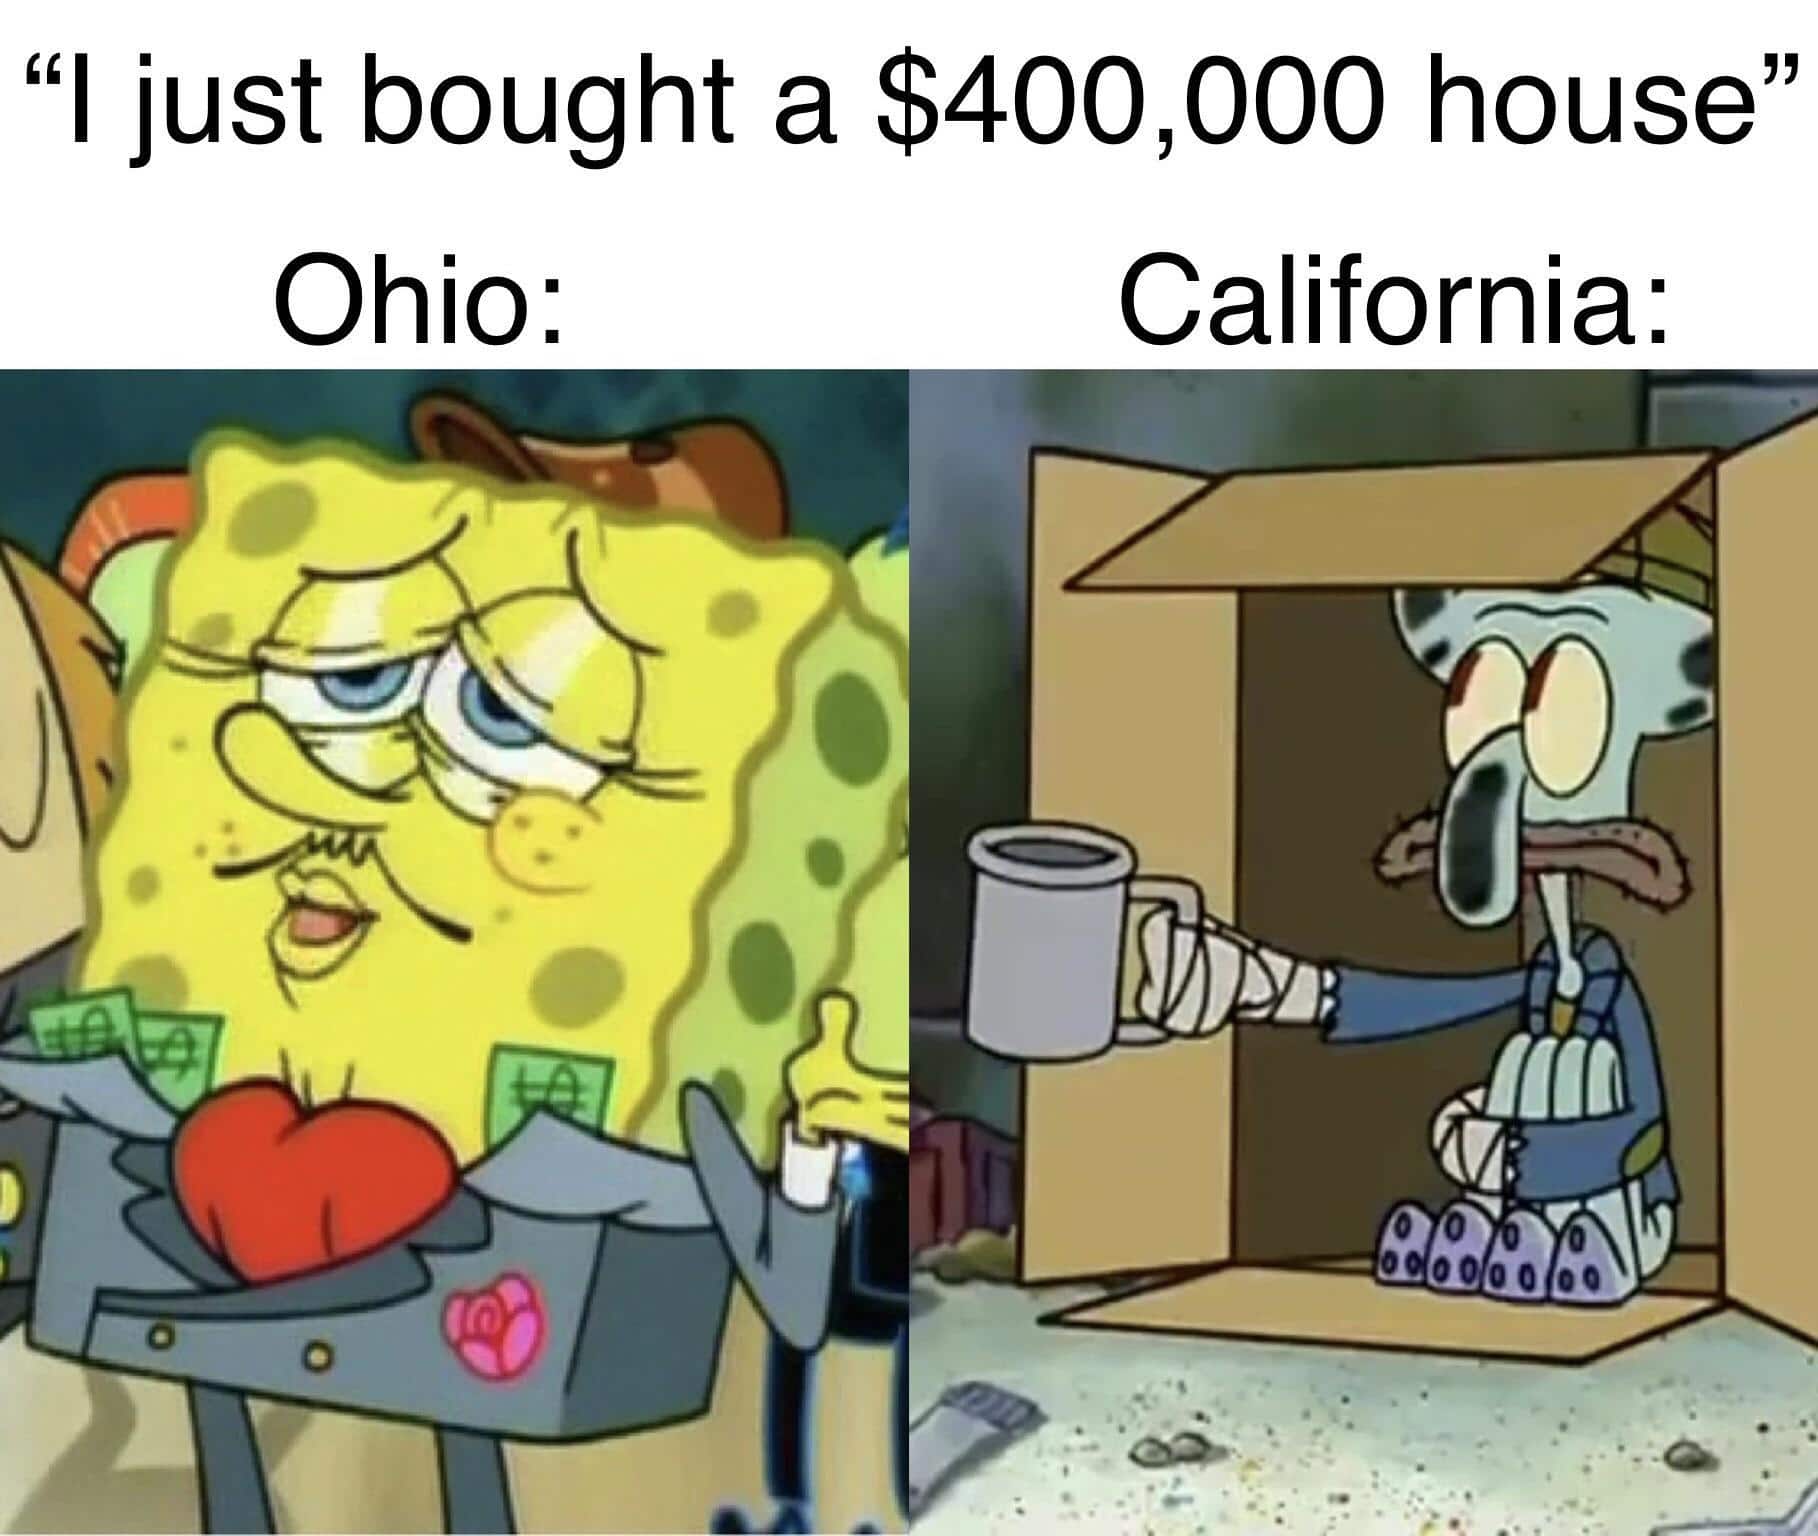 Spongebob Meme, Housing, Rich vs. Poor, Squidward Spongebob Memes Spongebob, Ohio, California, Wyoming, NYC, Midwest text: 